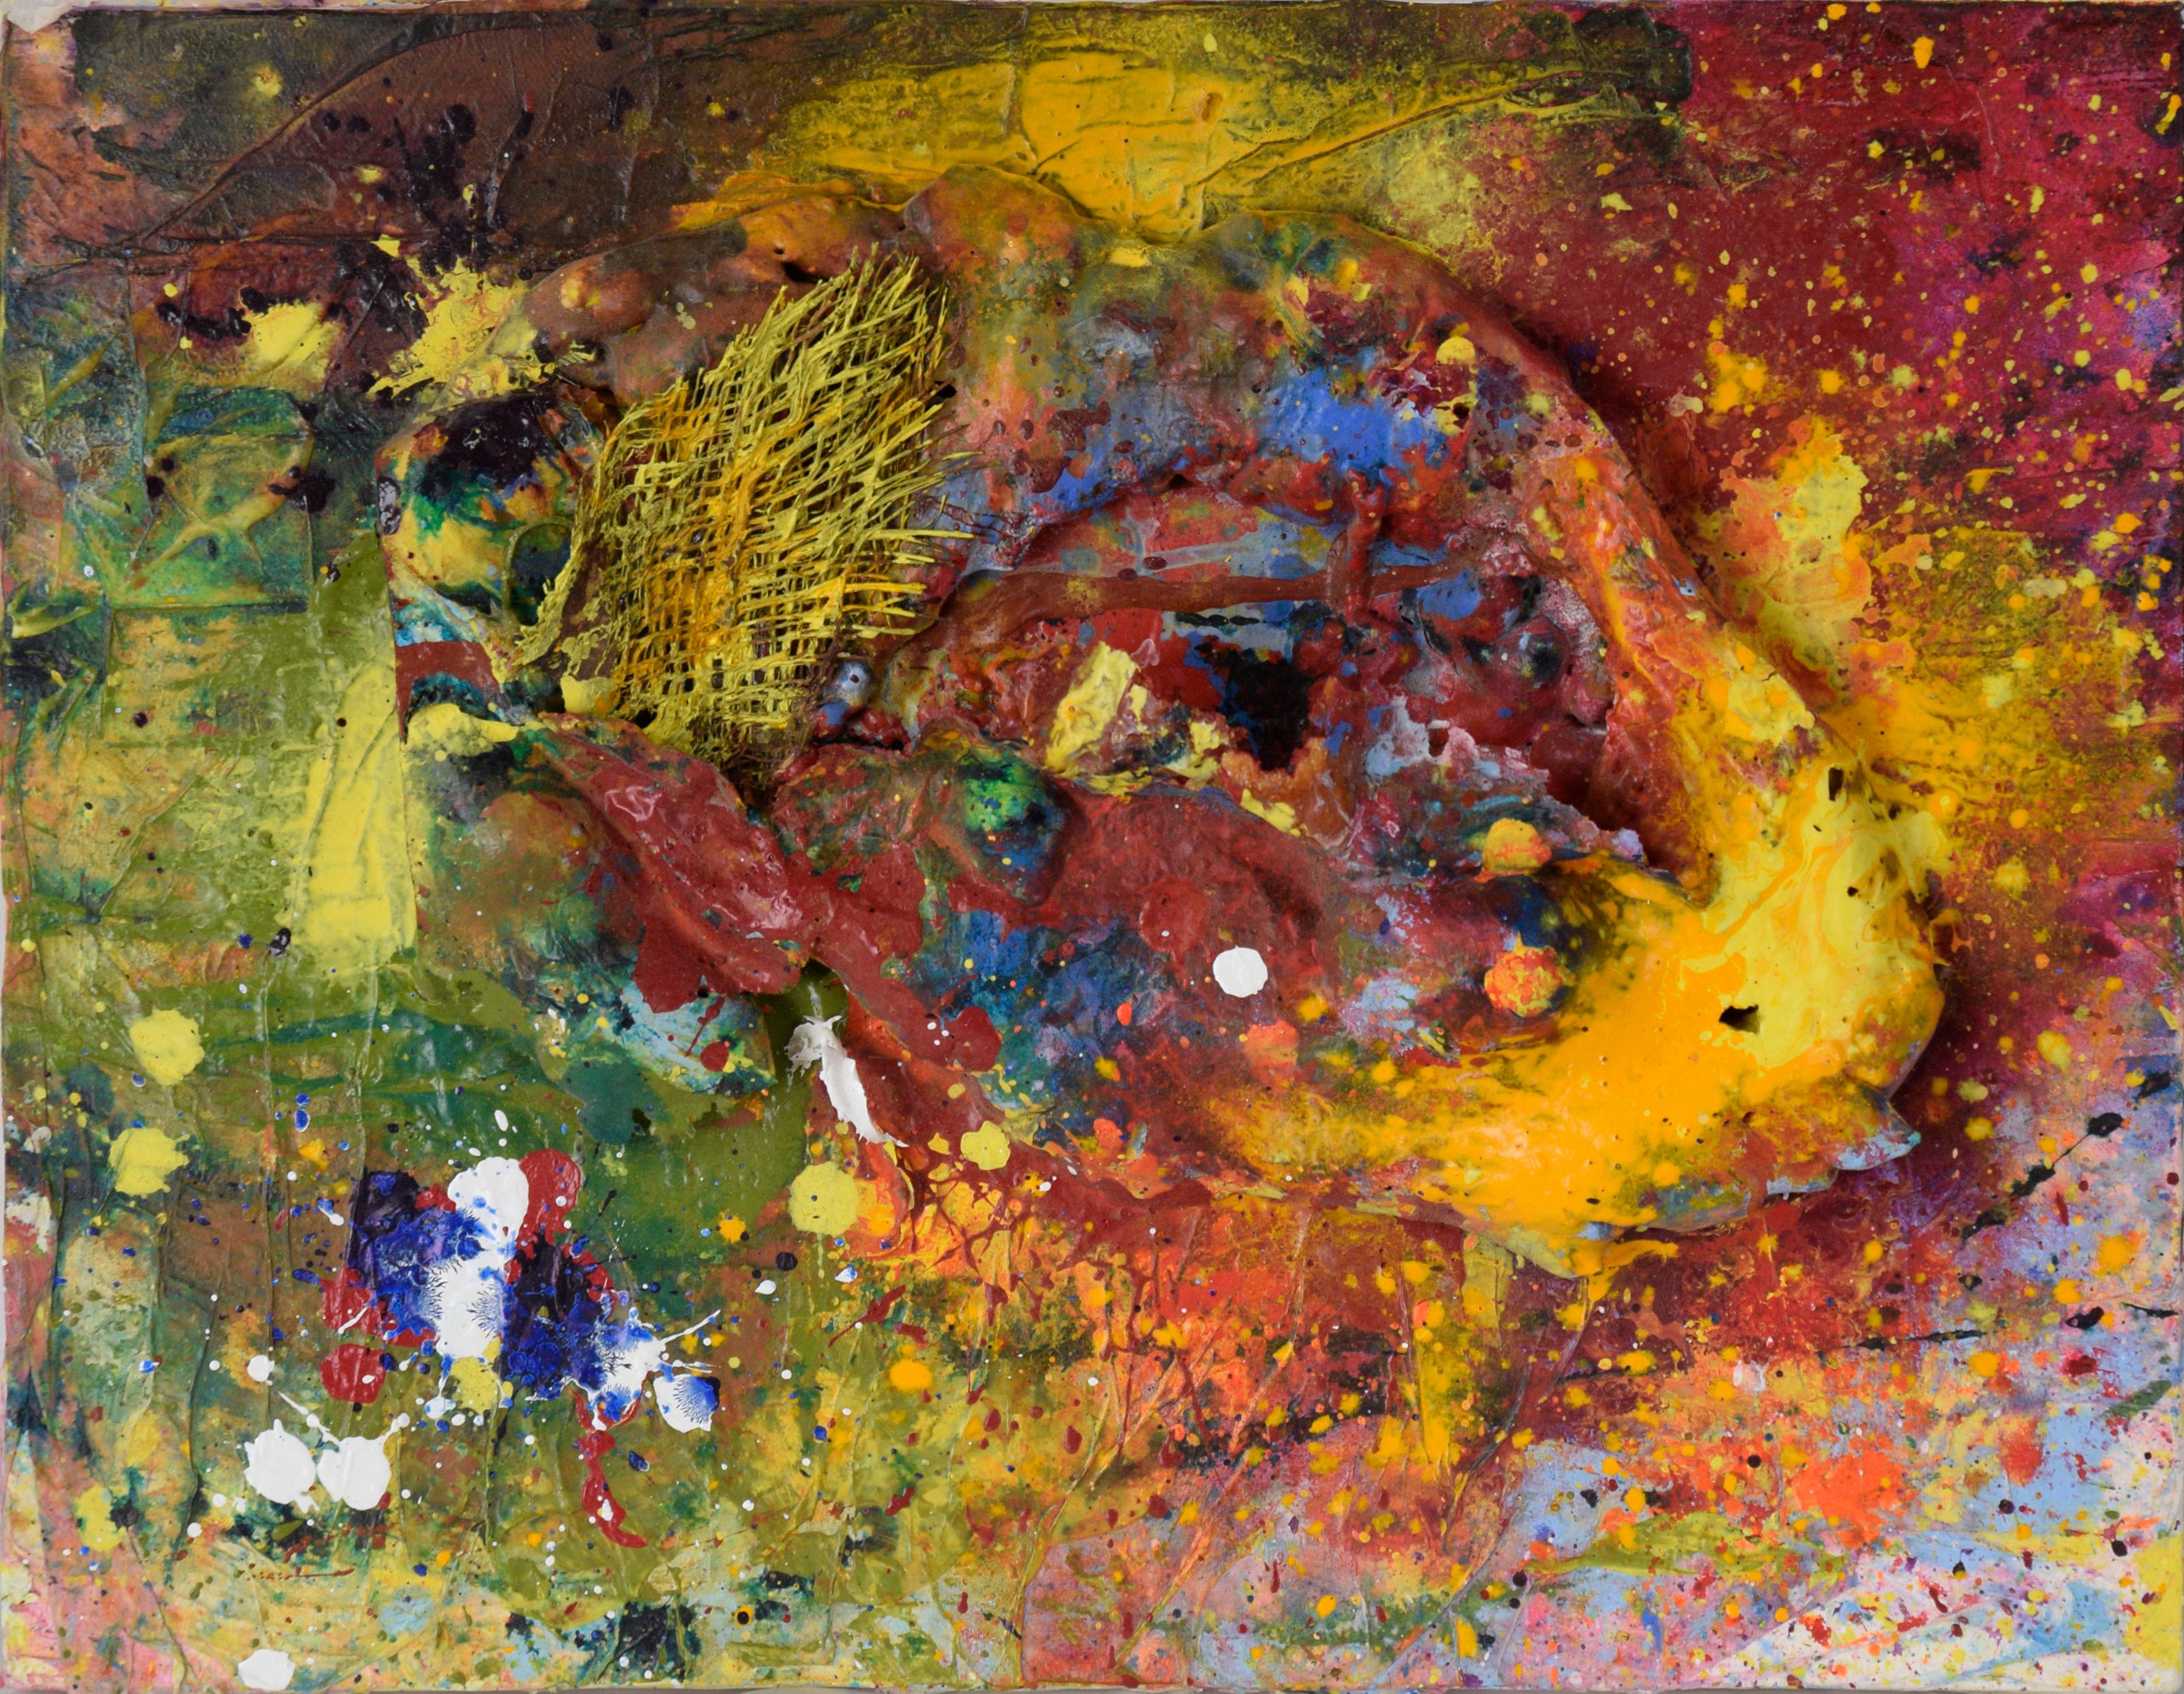 Assemblage Galaxy - Composition expressionniste abstraite en acrylique sur toile